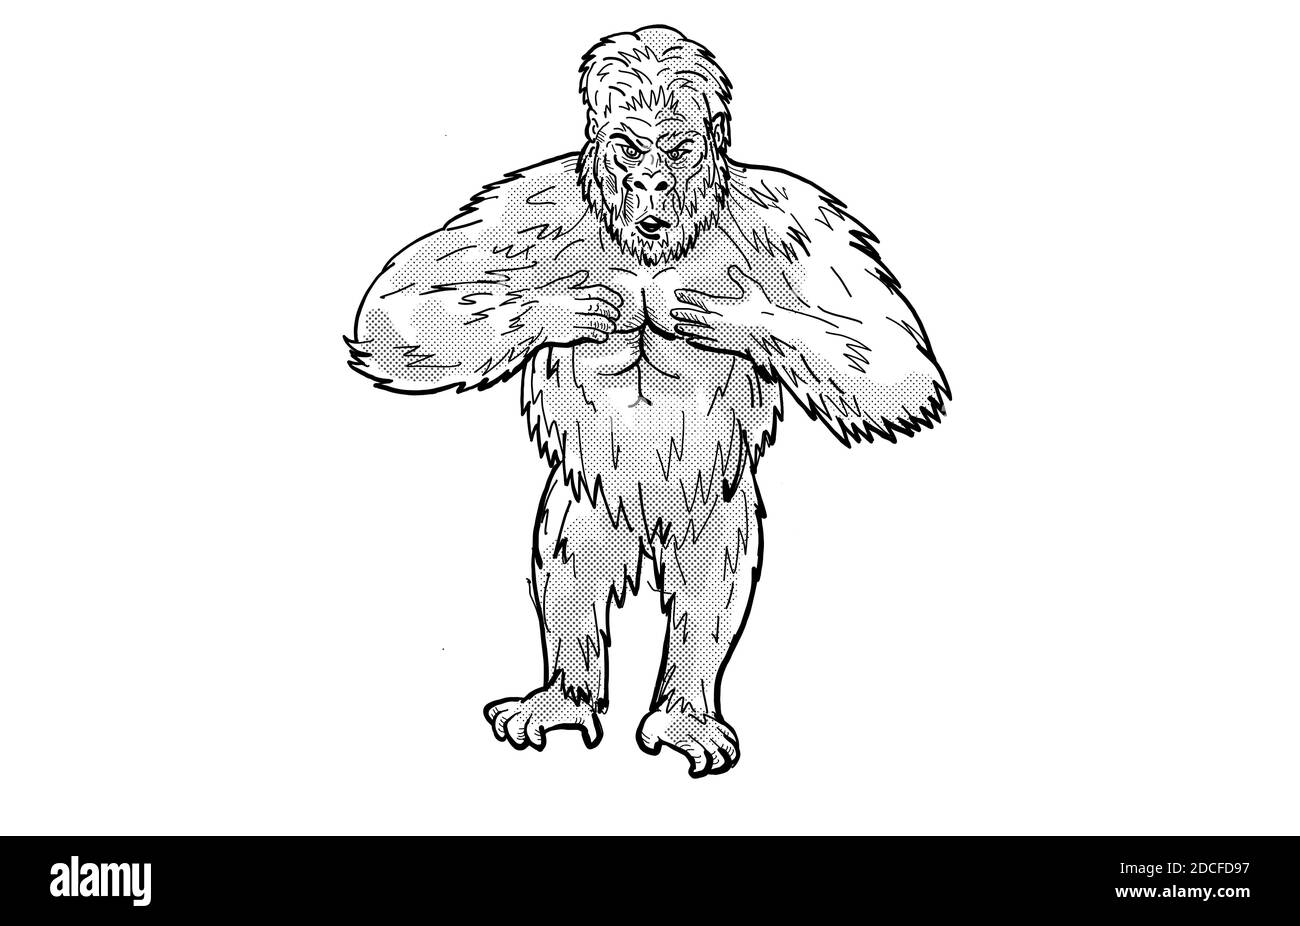 Illustration de style caricatulaire d'un gorille à l'arrière-plan qui fait un tour de poitrine, vu de l'avant sur un arrière-plan blanc isolé. Banque D'Images